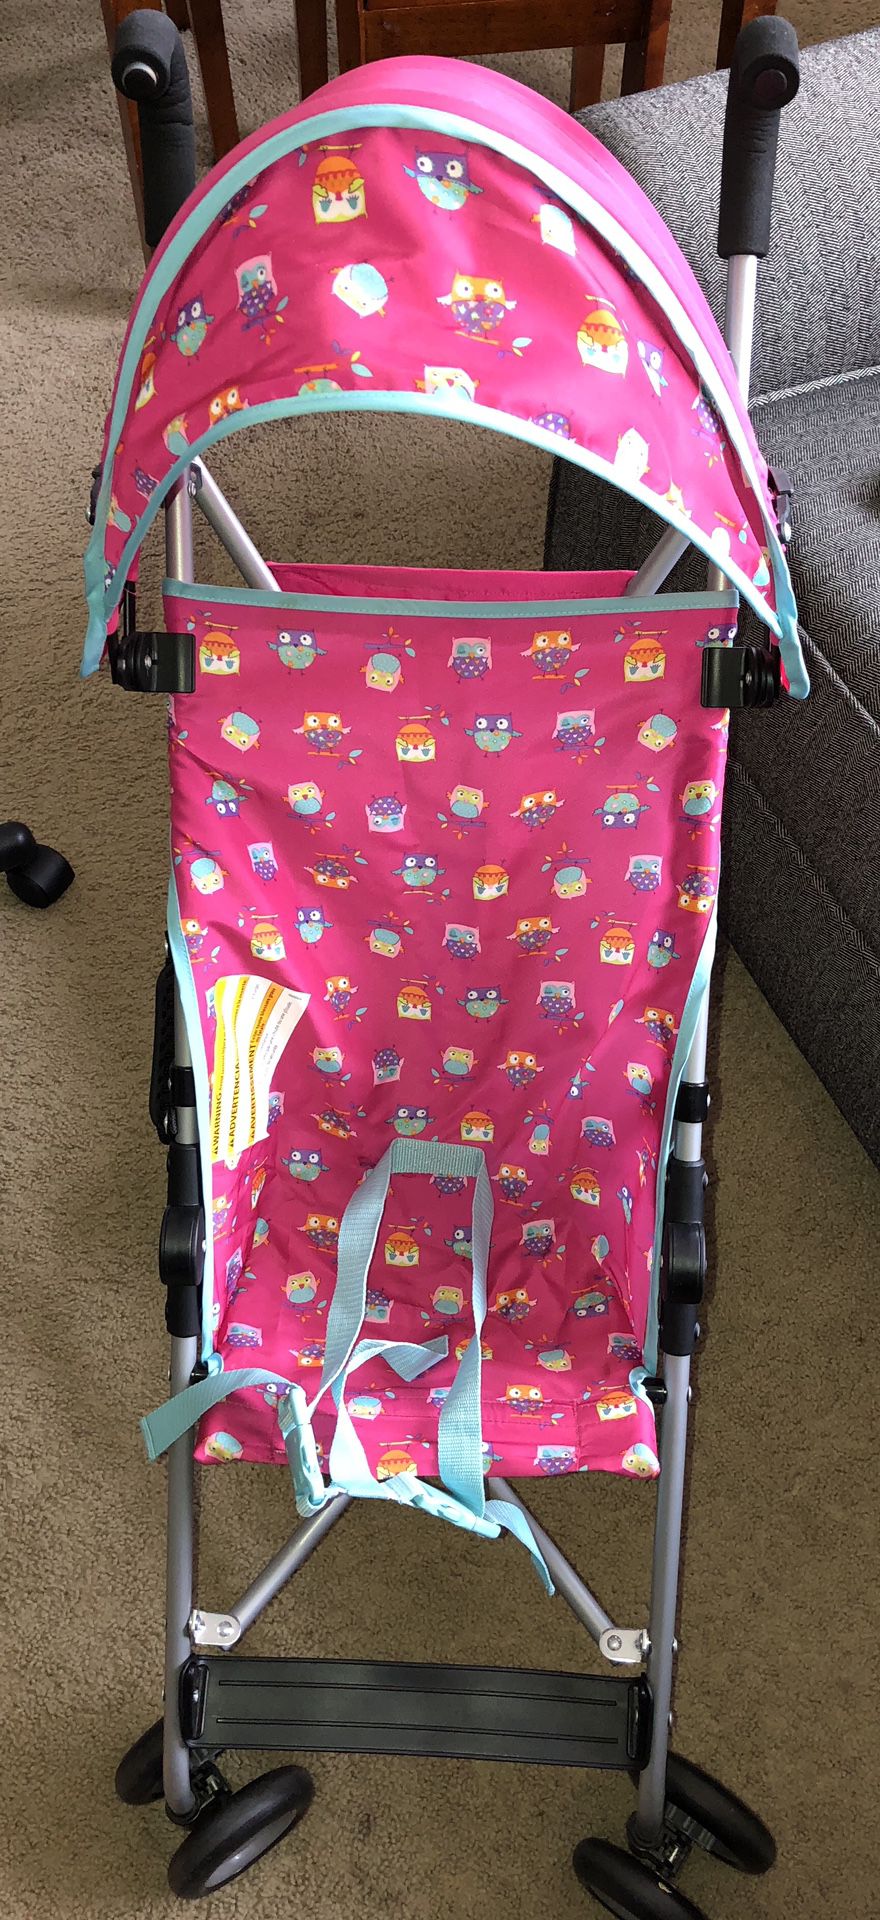 Mini stroller for Girl.